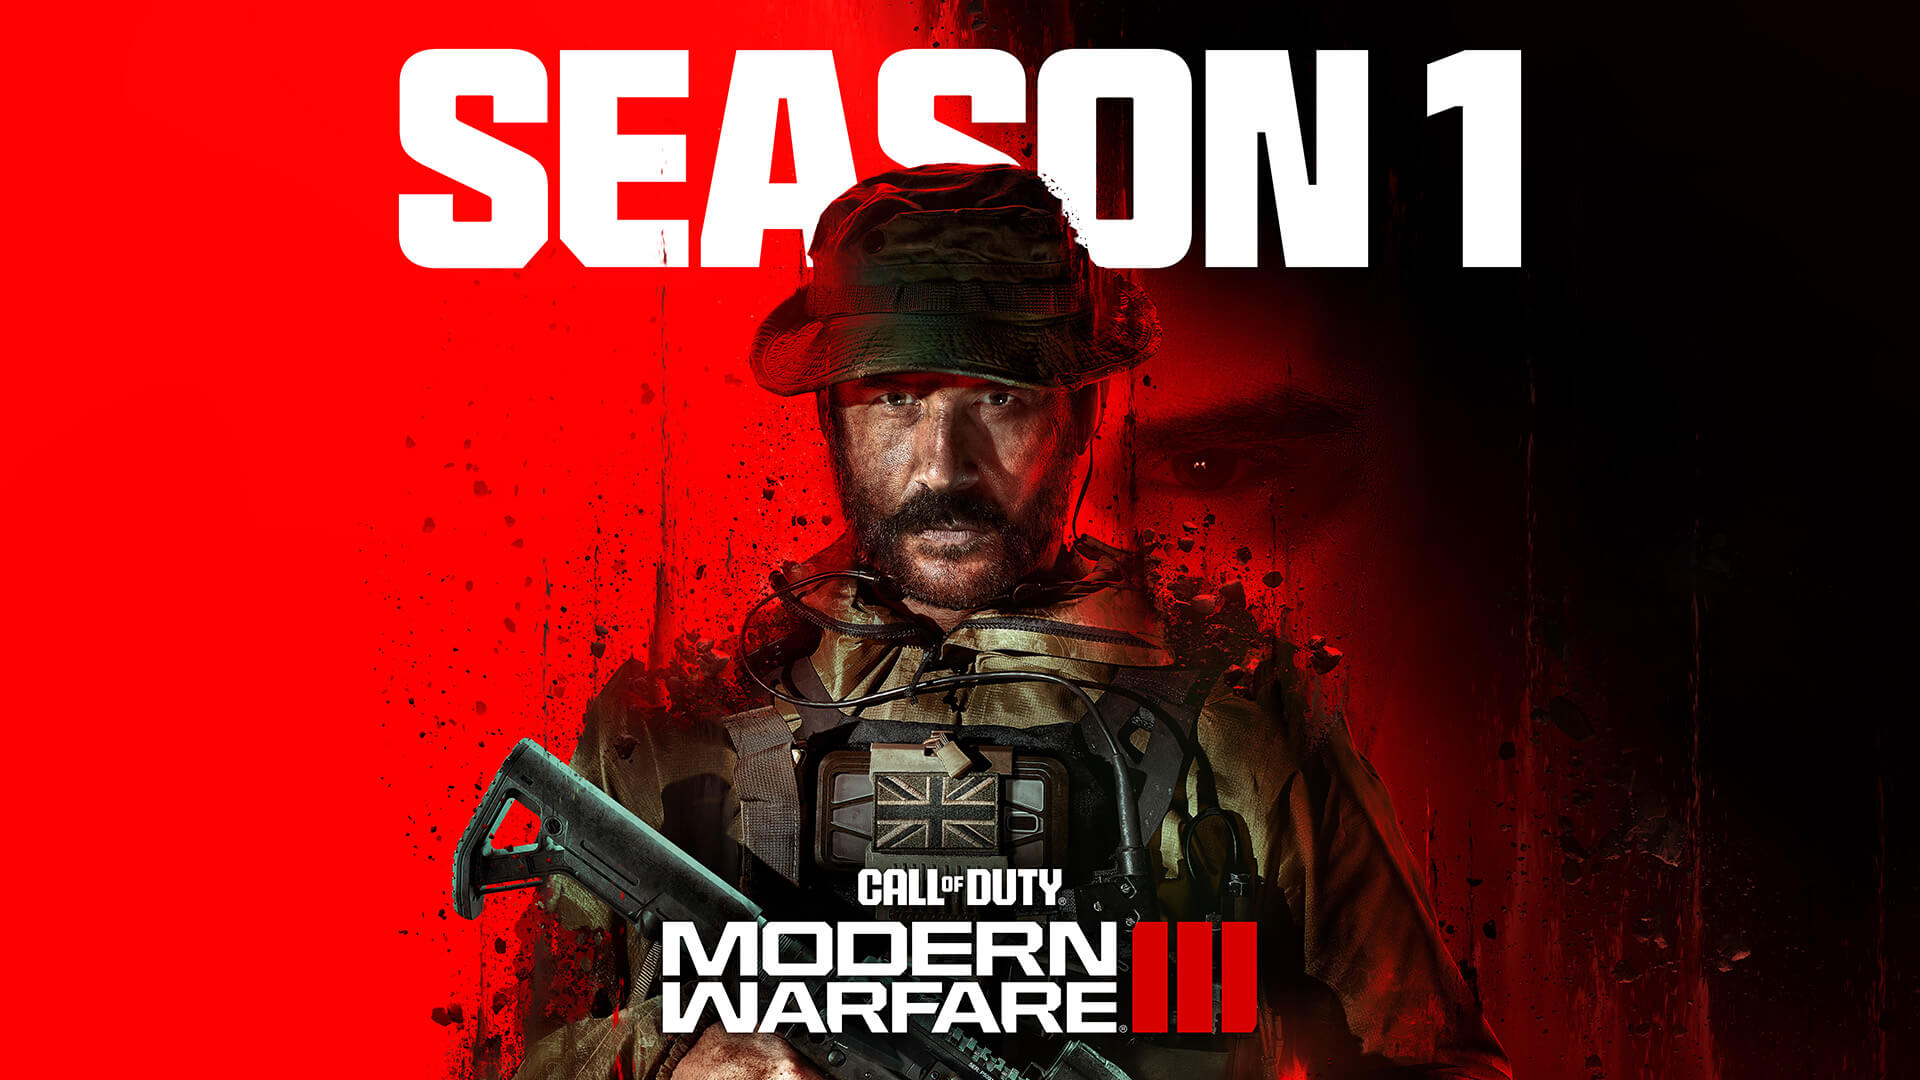 Call of Duty Modern Warfare 3: 'Call of Duty: Modern Warfare 3